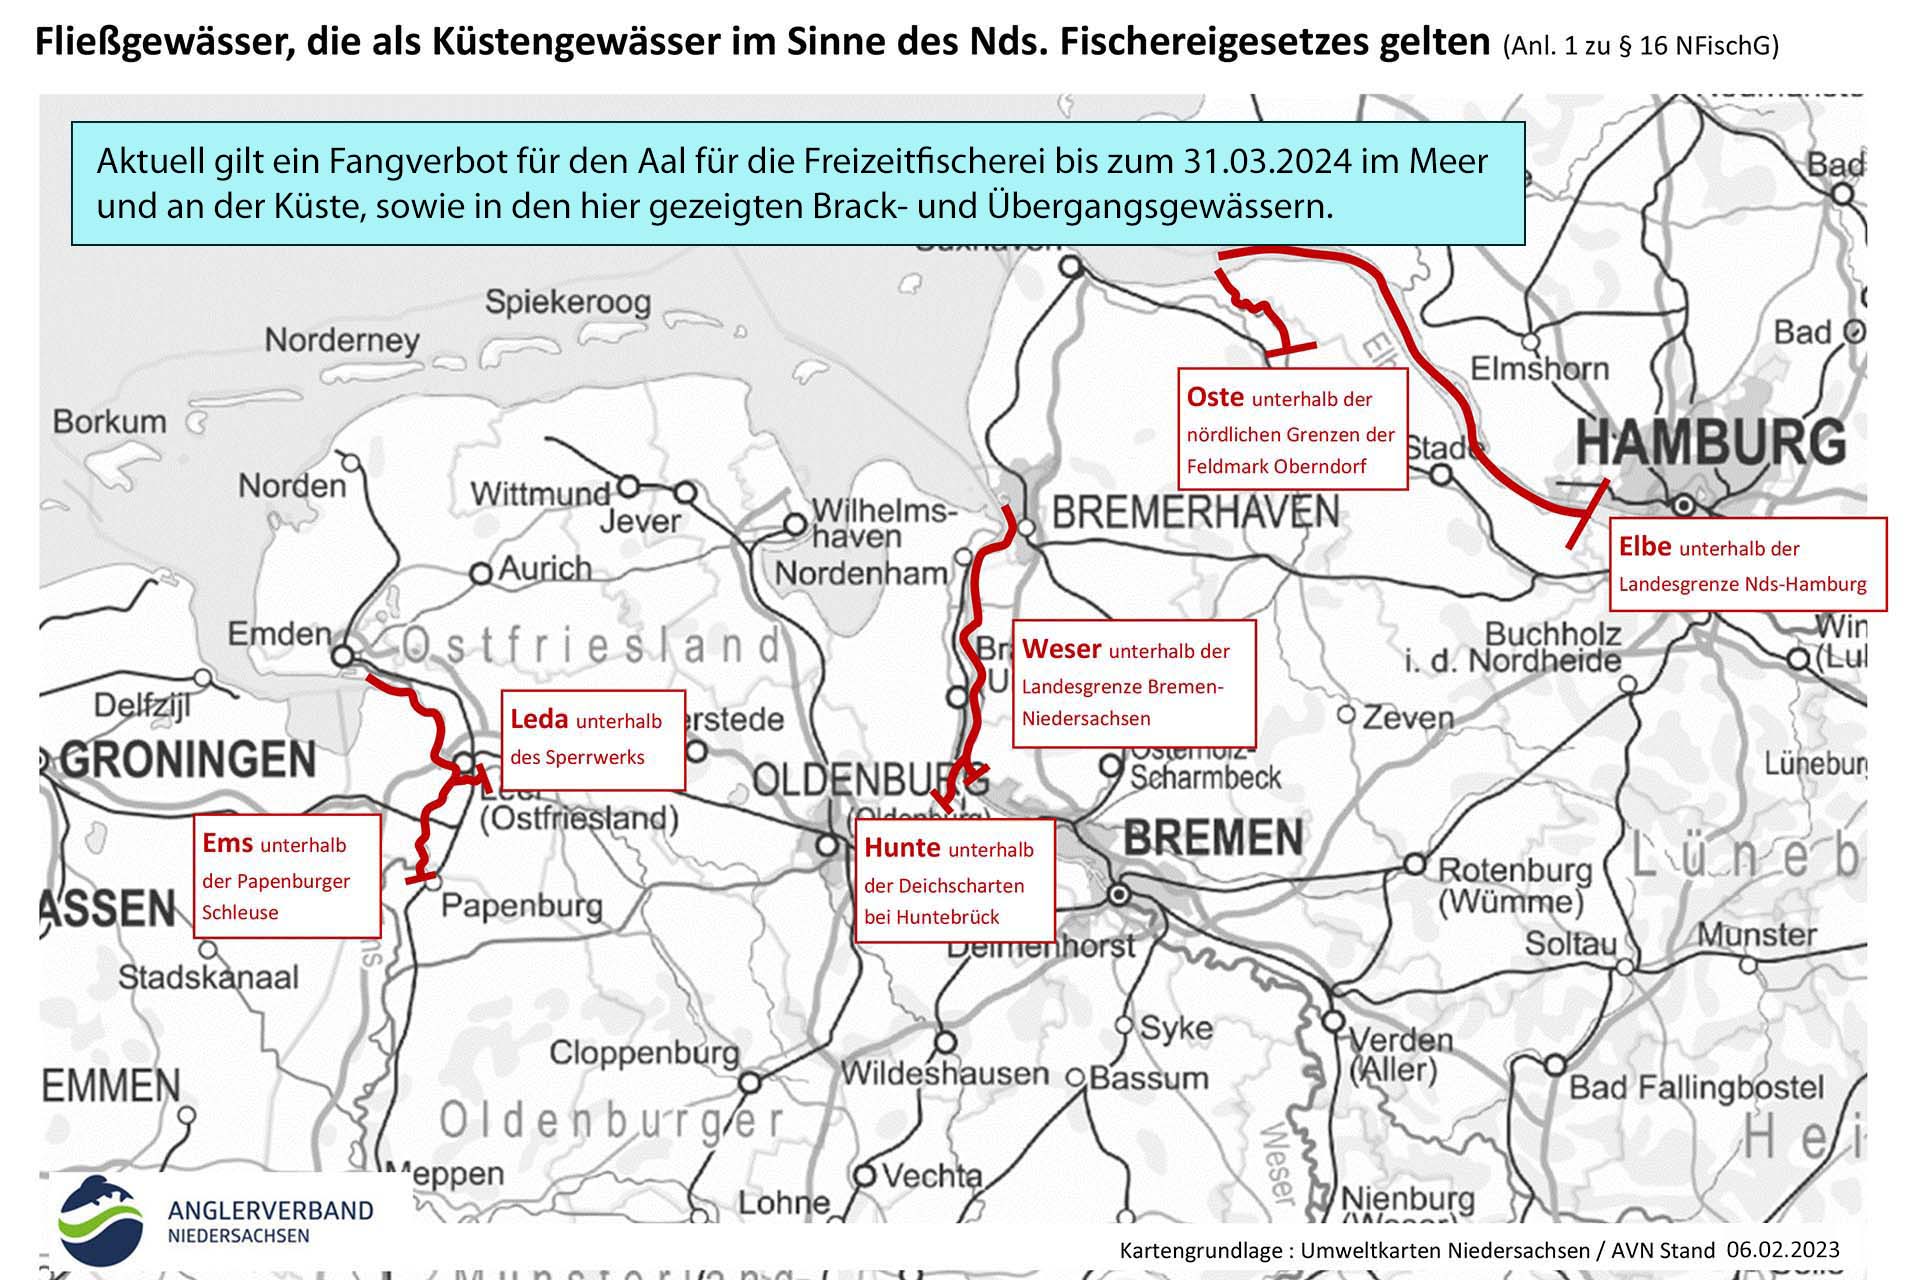 Aalfangverbot in Brack- und Übergangsgewässern in Niedersachsen